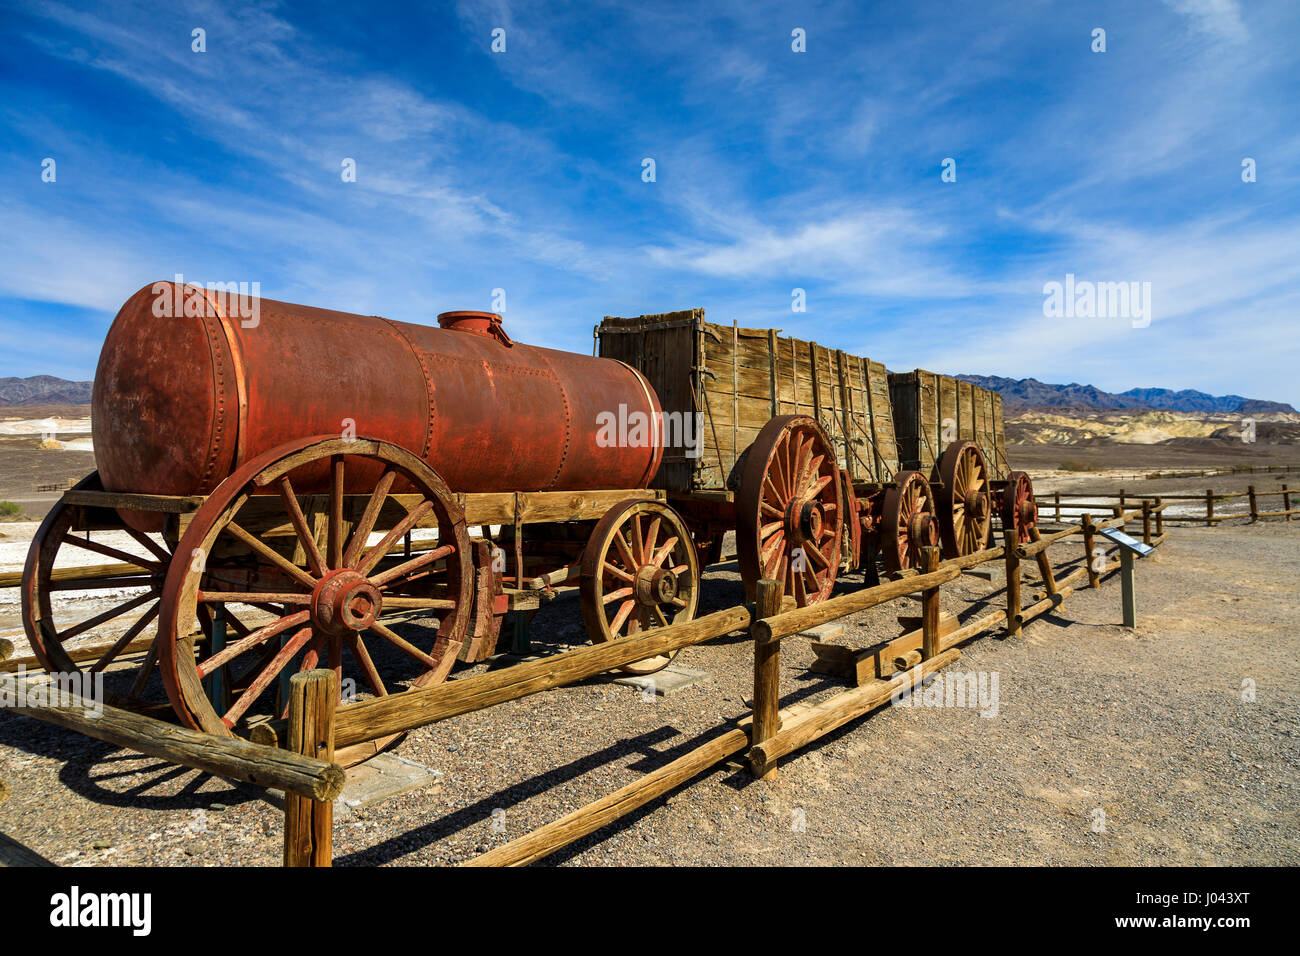 Dies ist ein Blick auf das Wasser Wagen und die beiden 20 Mule Team-Erz-Wagen auf dem Display an der Harmony Borax Works in Death Valley Nationalpark, Kalifornien, Stockfoto